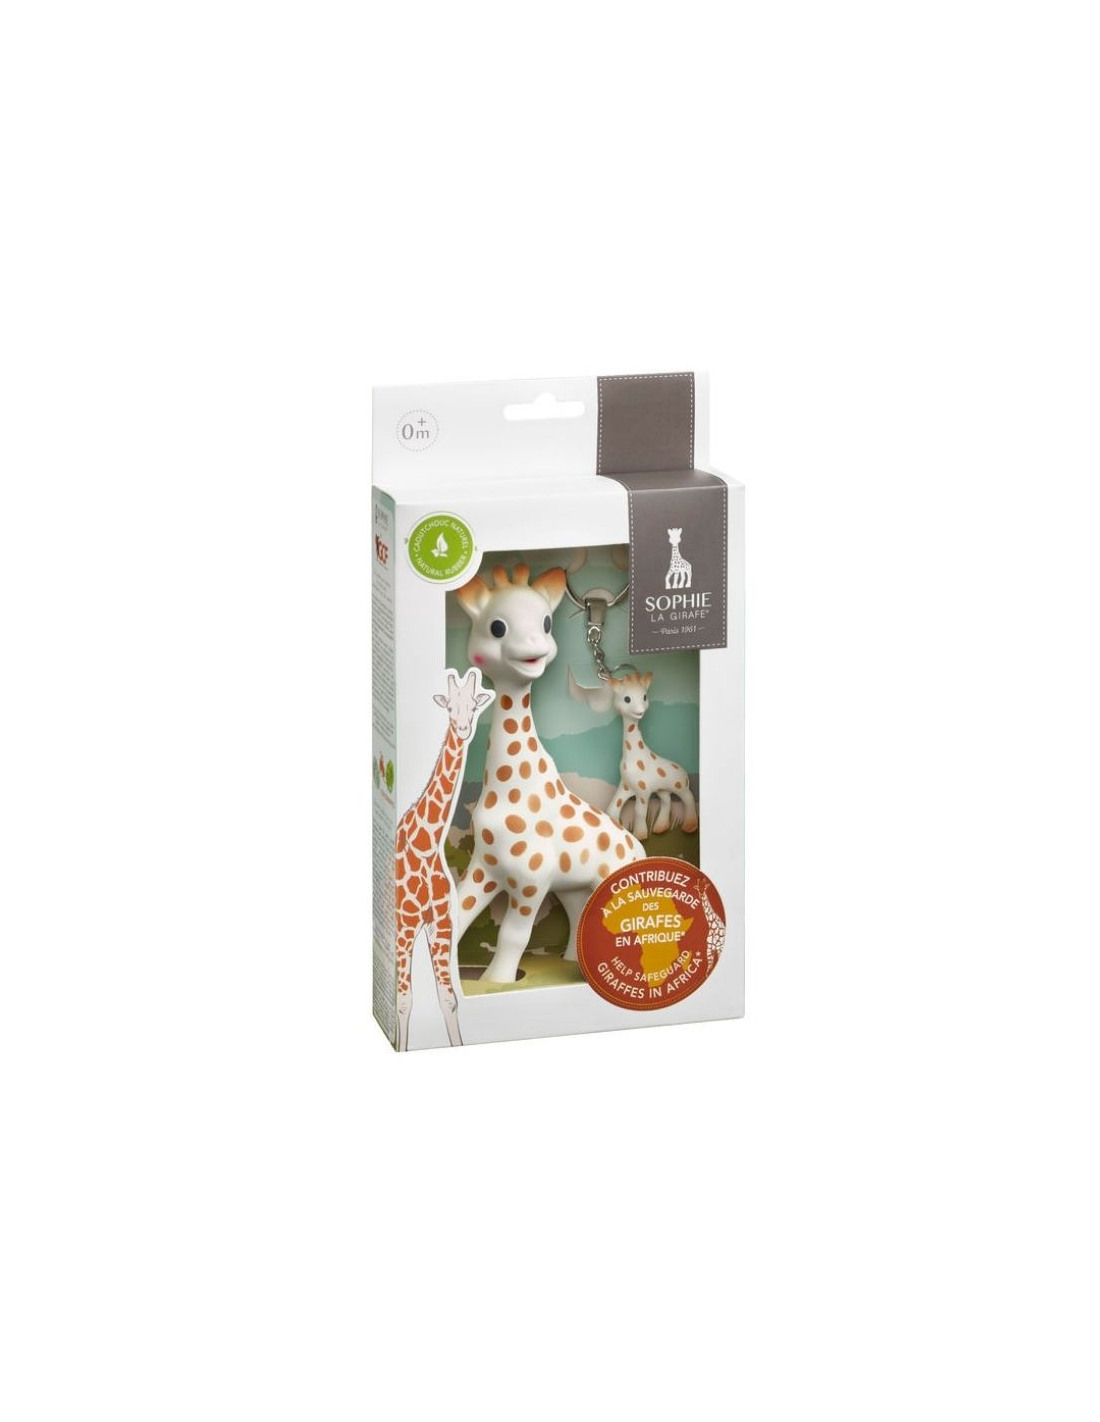 Pack comida Sophie la girafe incl. Plato, Bol, Vaso y cucharra 100%  silicona en su caja regalo